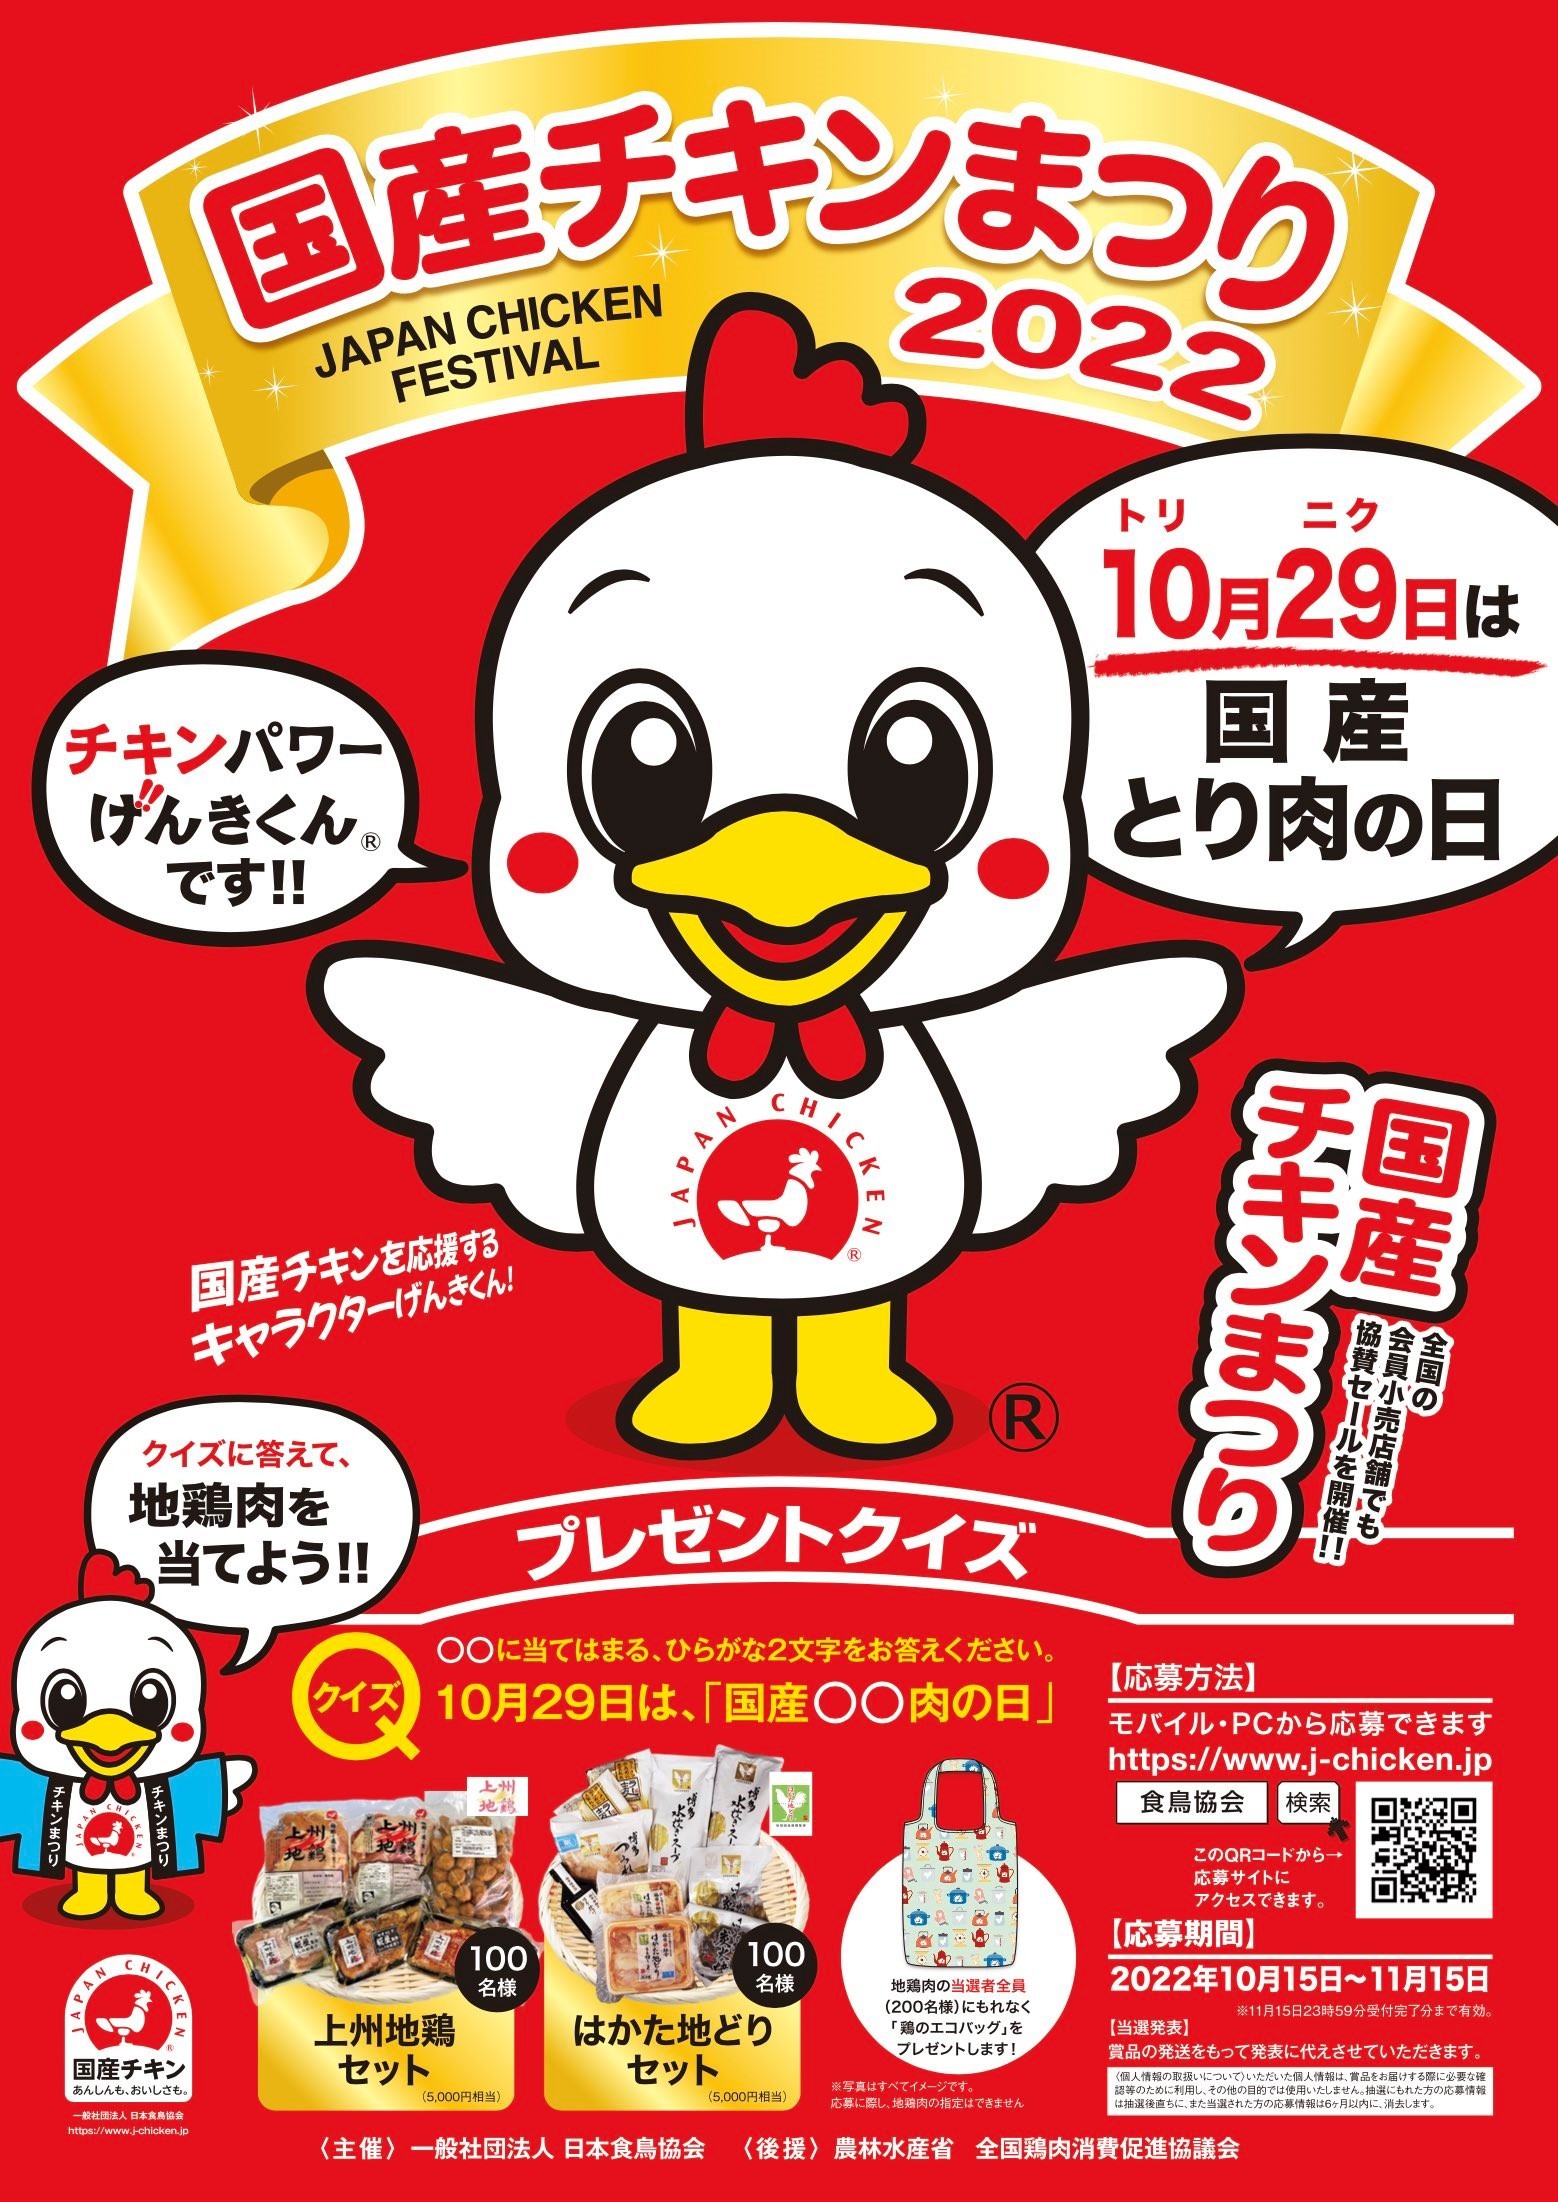 地鶏肉セットプレゼントキャンペーンを
10月15日(土)～11月15日(火)に開催　
～あんしんも、おいしさも。～